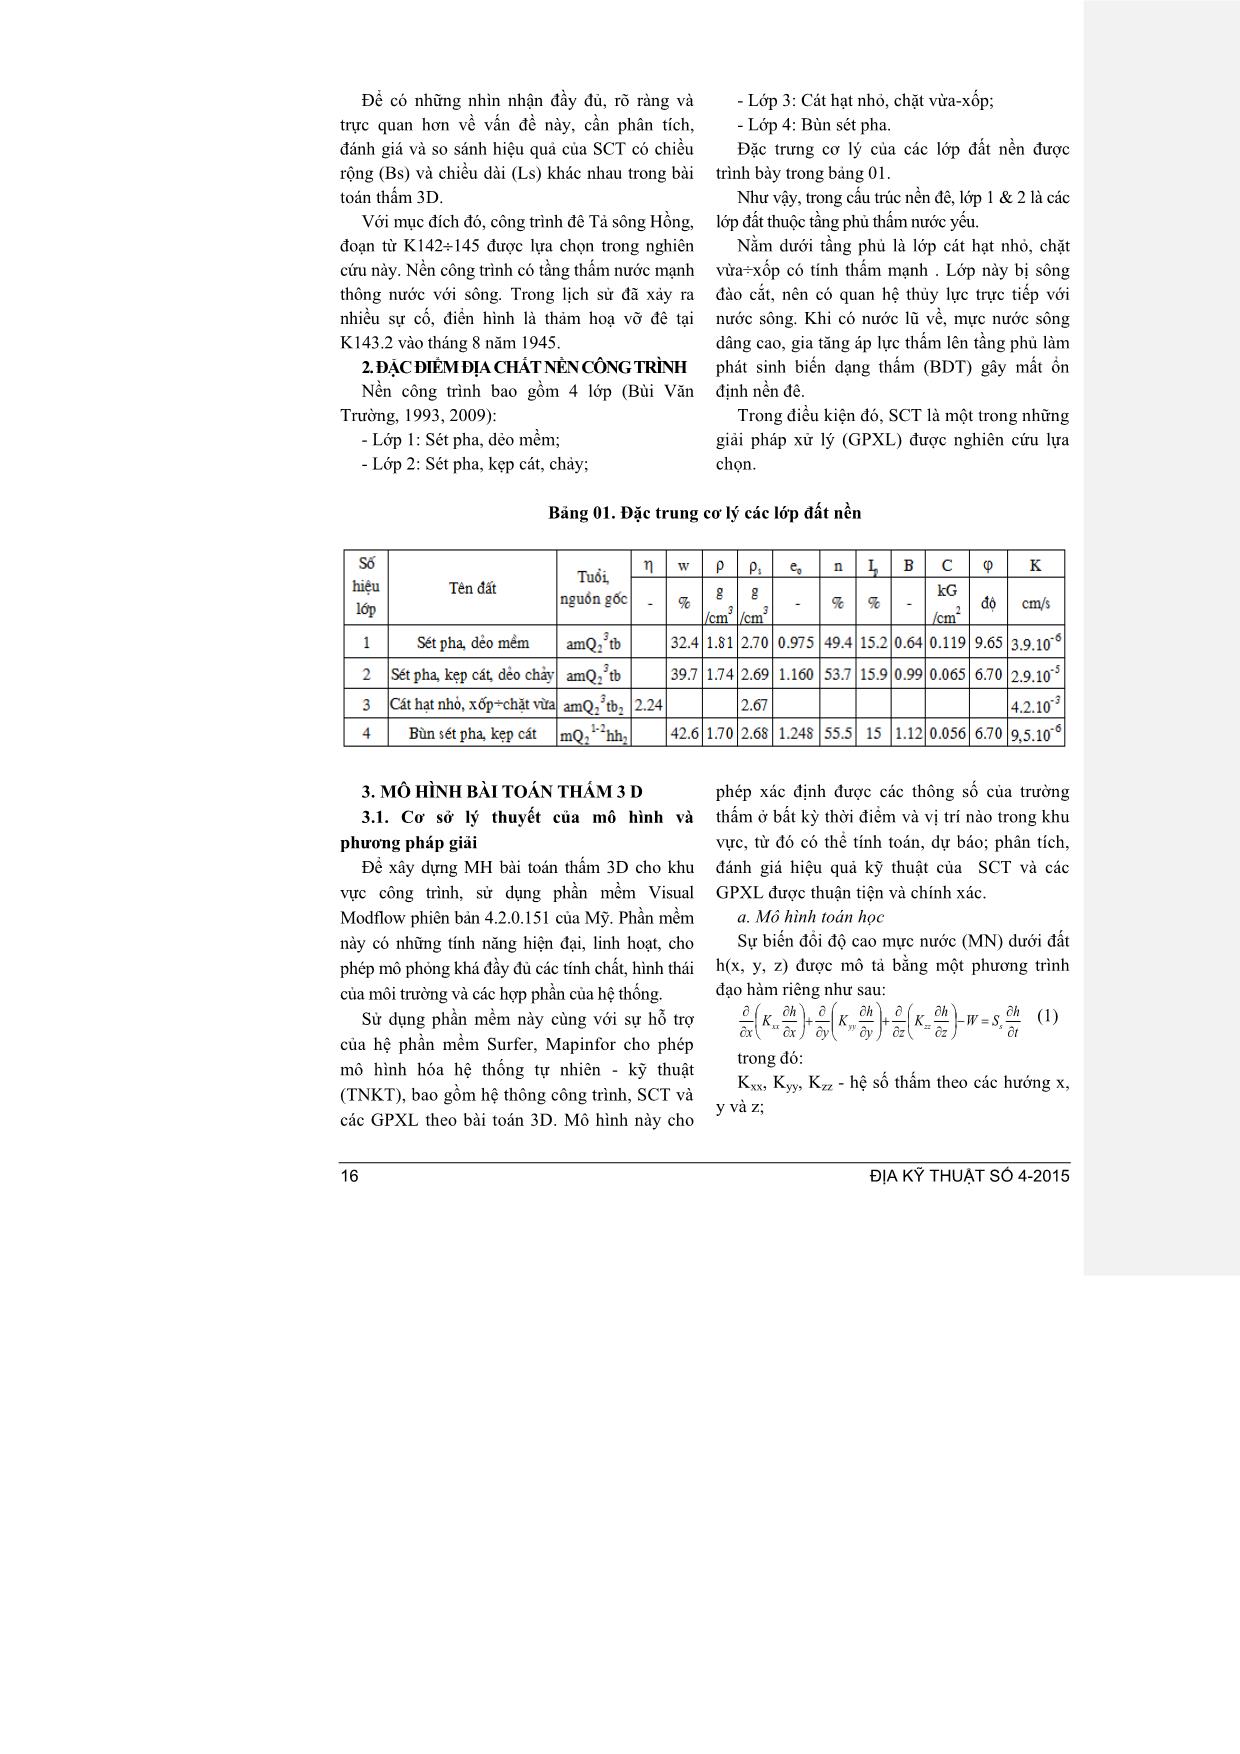 Nghiên cứu ảnh hưởng chiều rộng của sân chống thấm bằng mô hình bài toán thấm 3 chiều trang 2